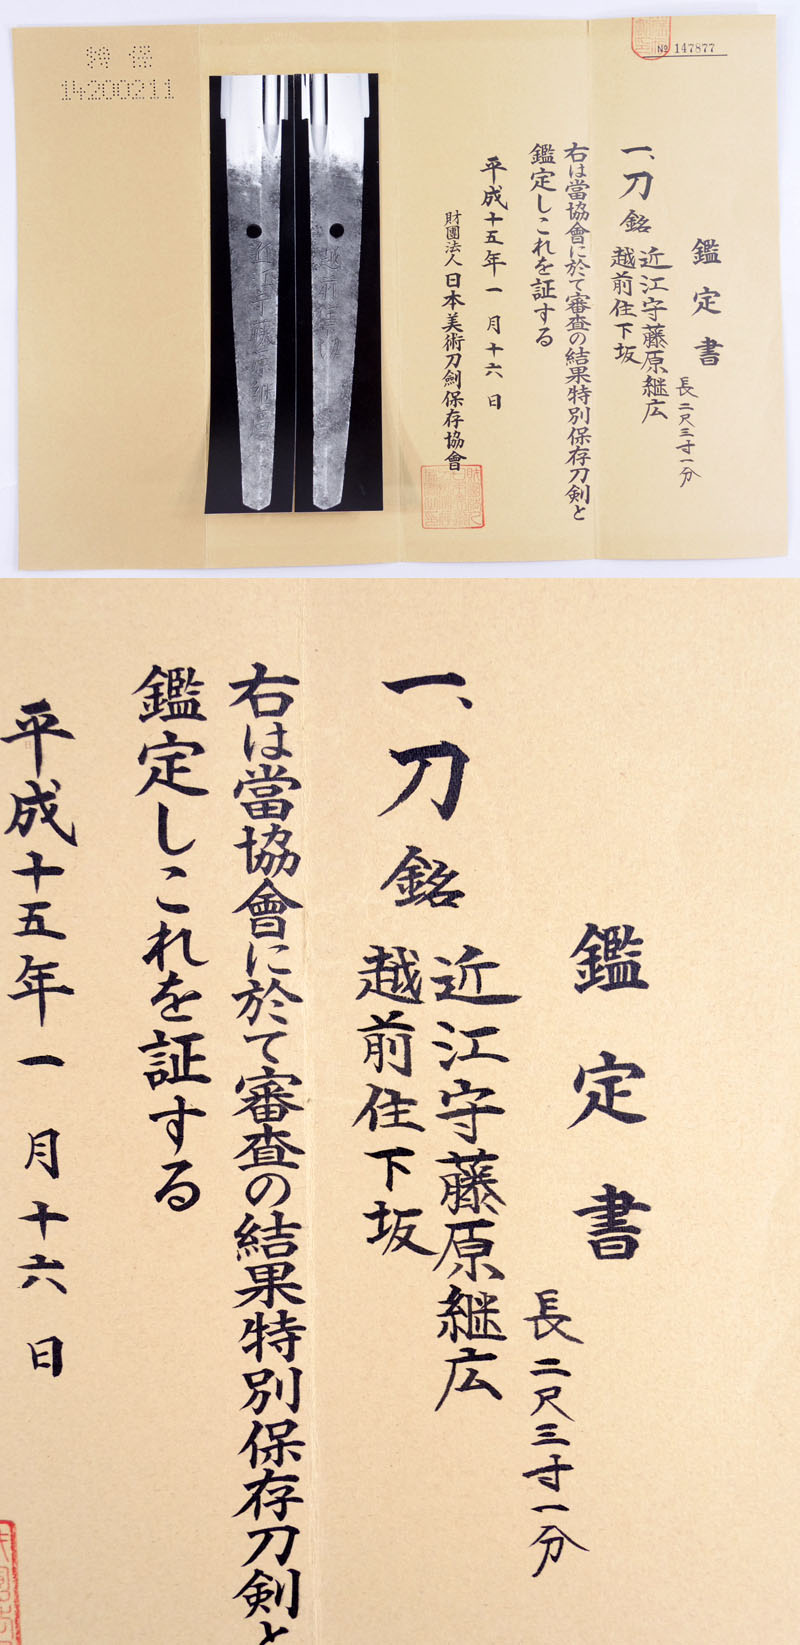 近江守藤原継広 Picture of Certificate